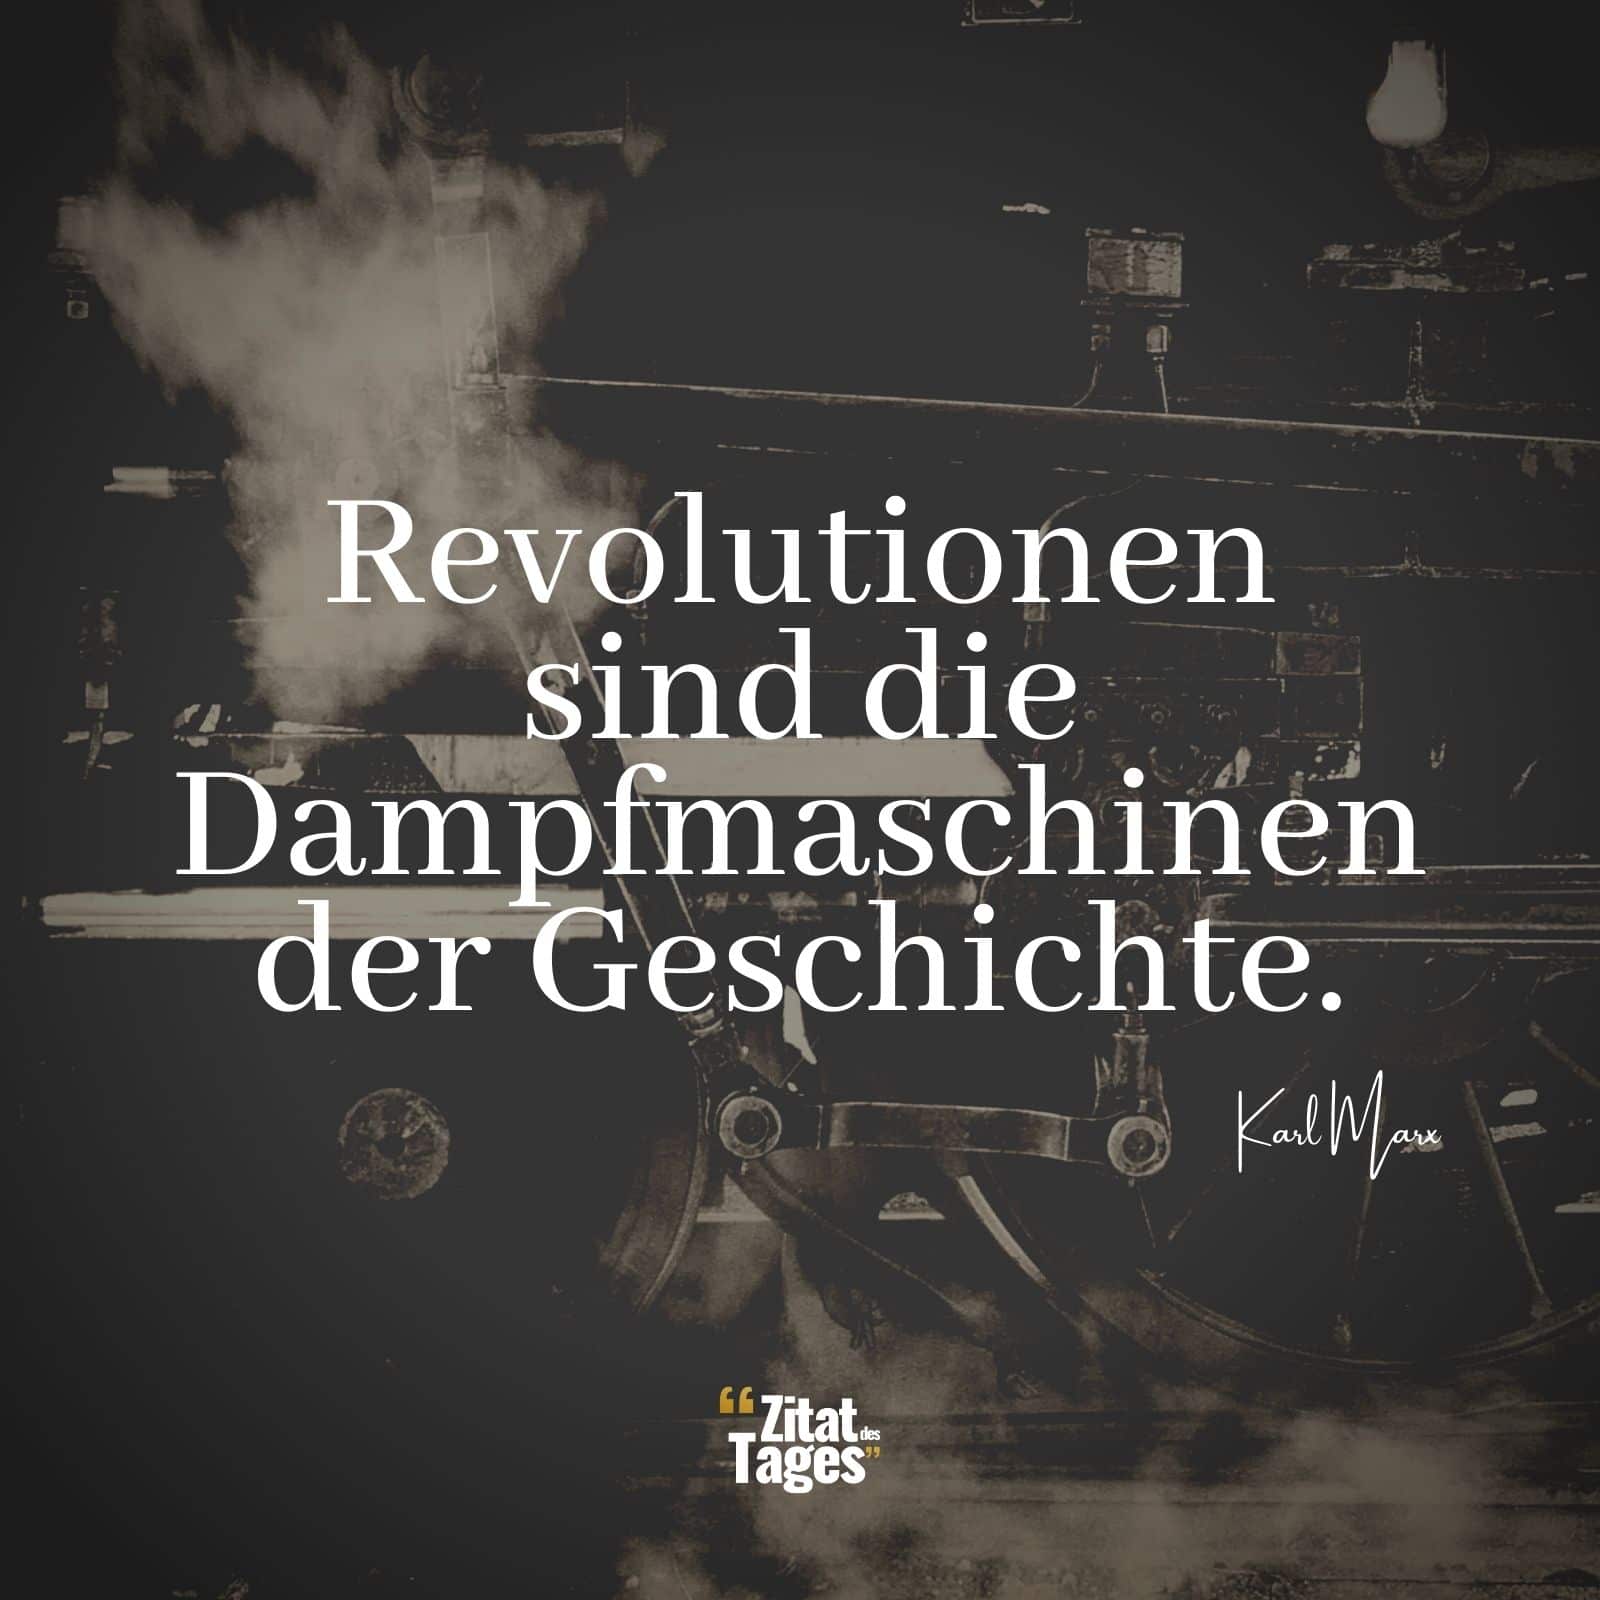 Revolutionen sind die Dampfmaschinen der Geschichte. - Karl Marx